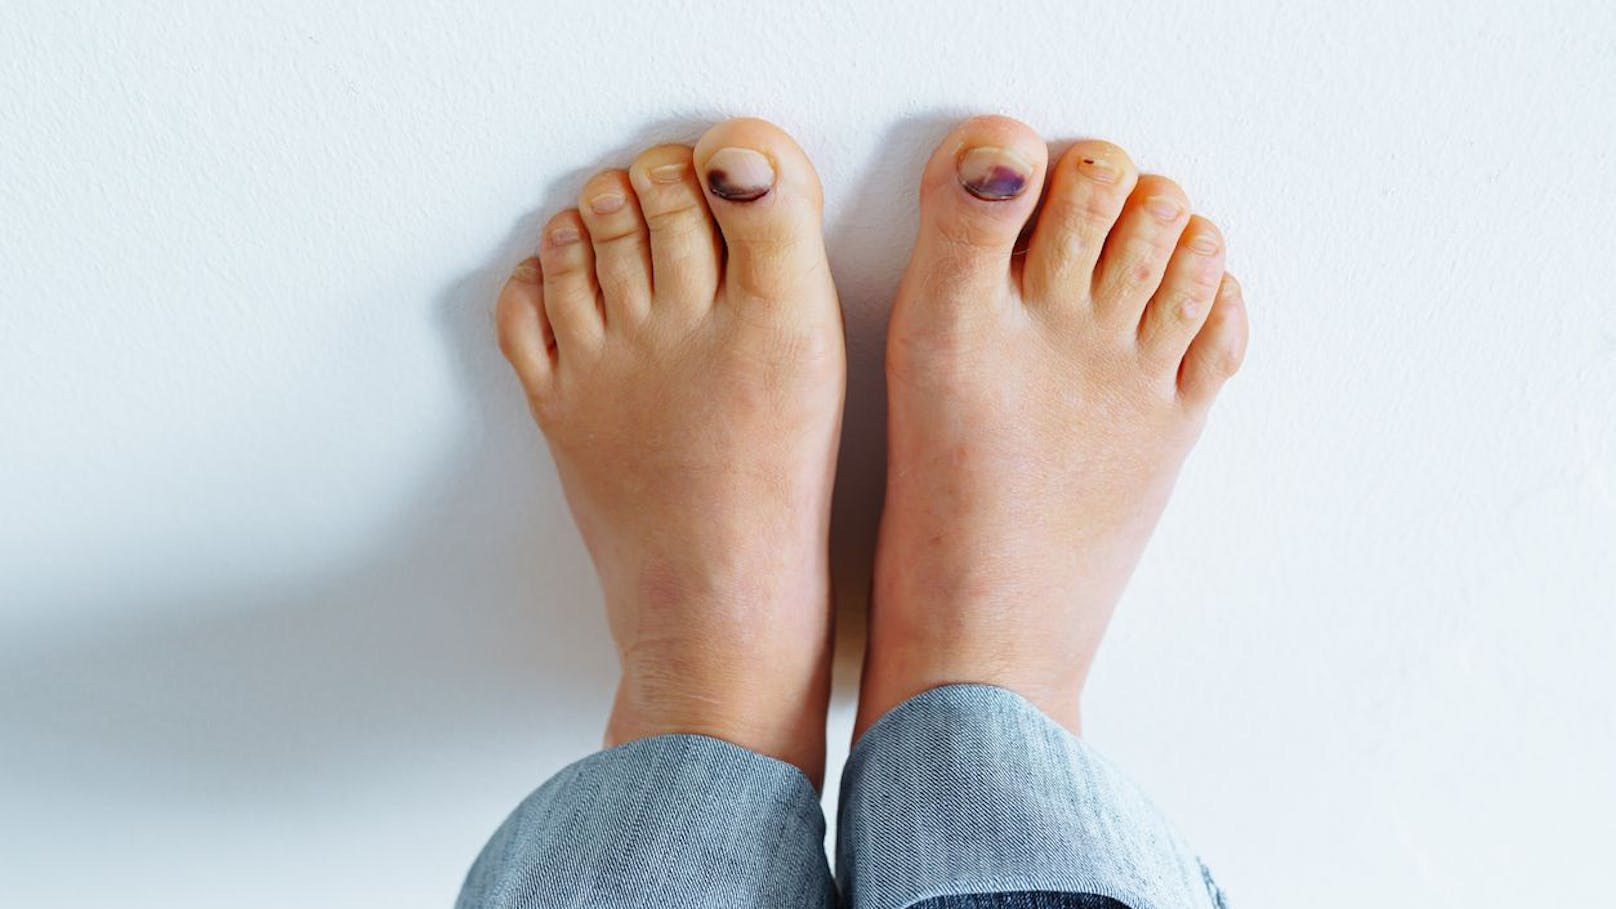 <strong>Nagelflecken:</strong> Flecken unter dem Zehennagel können ein Anzeichen für Schuppenflechte, eine Pilzinfektion, Dermatitis und auch ein Hinweis auf ein Melanom sein. Dunkle vertikale Streifen entstehen durch Hormonverschiebungen in der Schwangerschaft oder durch die Verwendung von Nagellack. Sie können aber auch auf ein Melanom (Hautkrebs) hinweisen und eine Pilzinfektion wie Fußpilz im Nagelbett anzeigen.